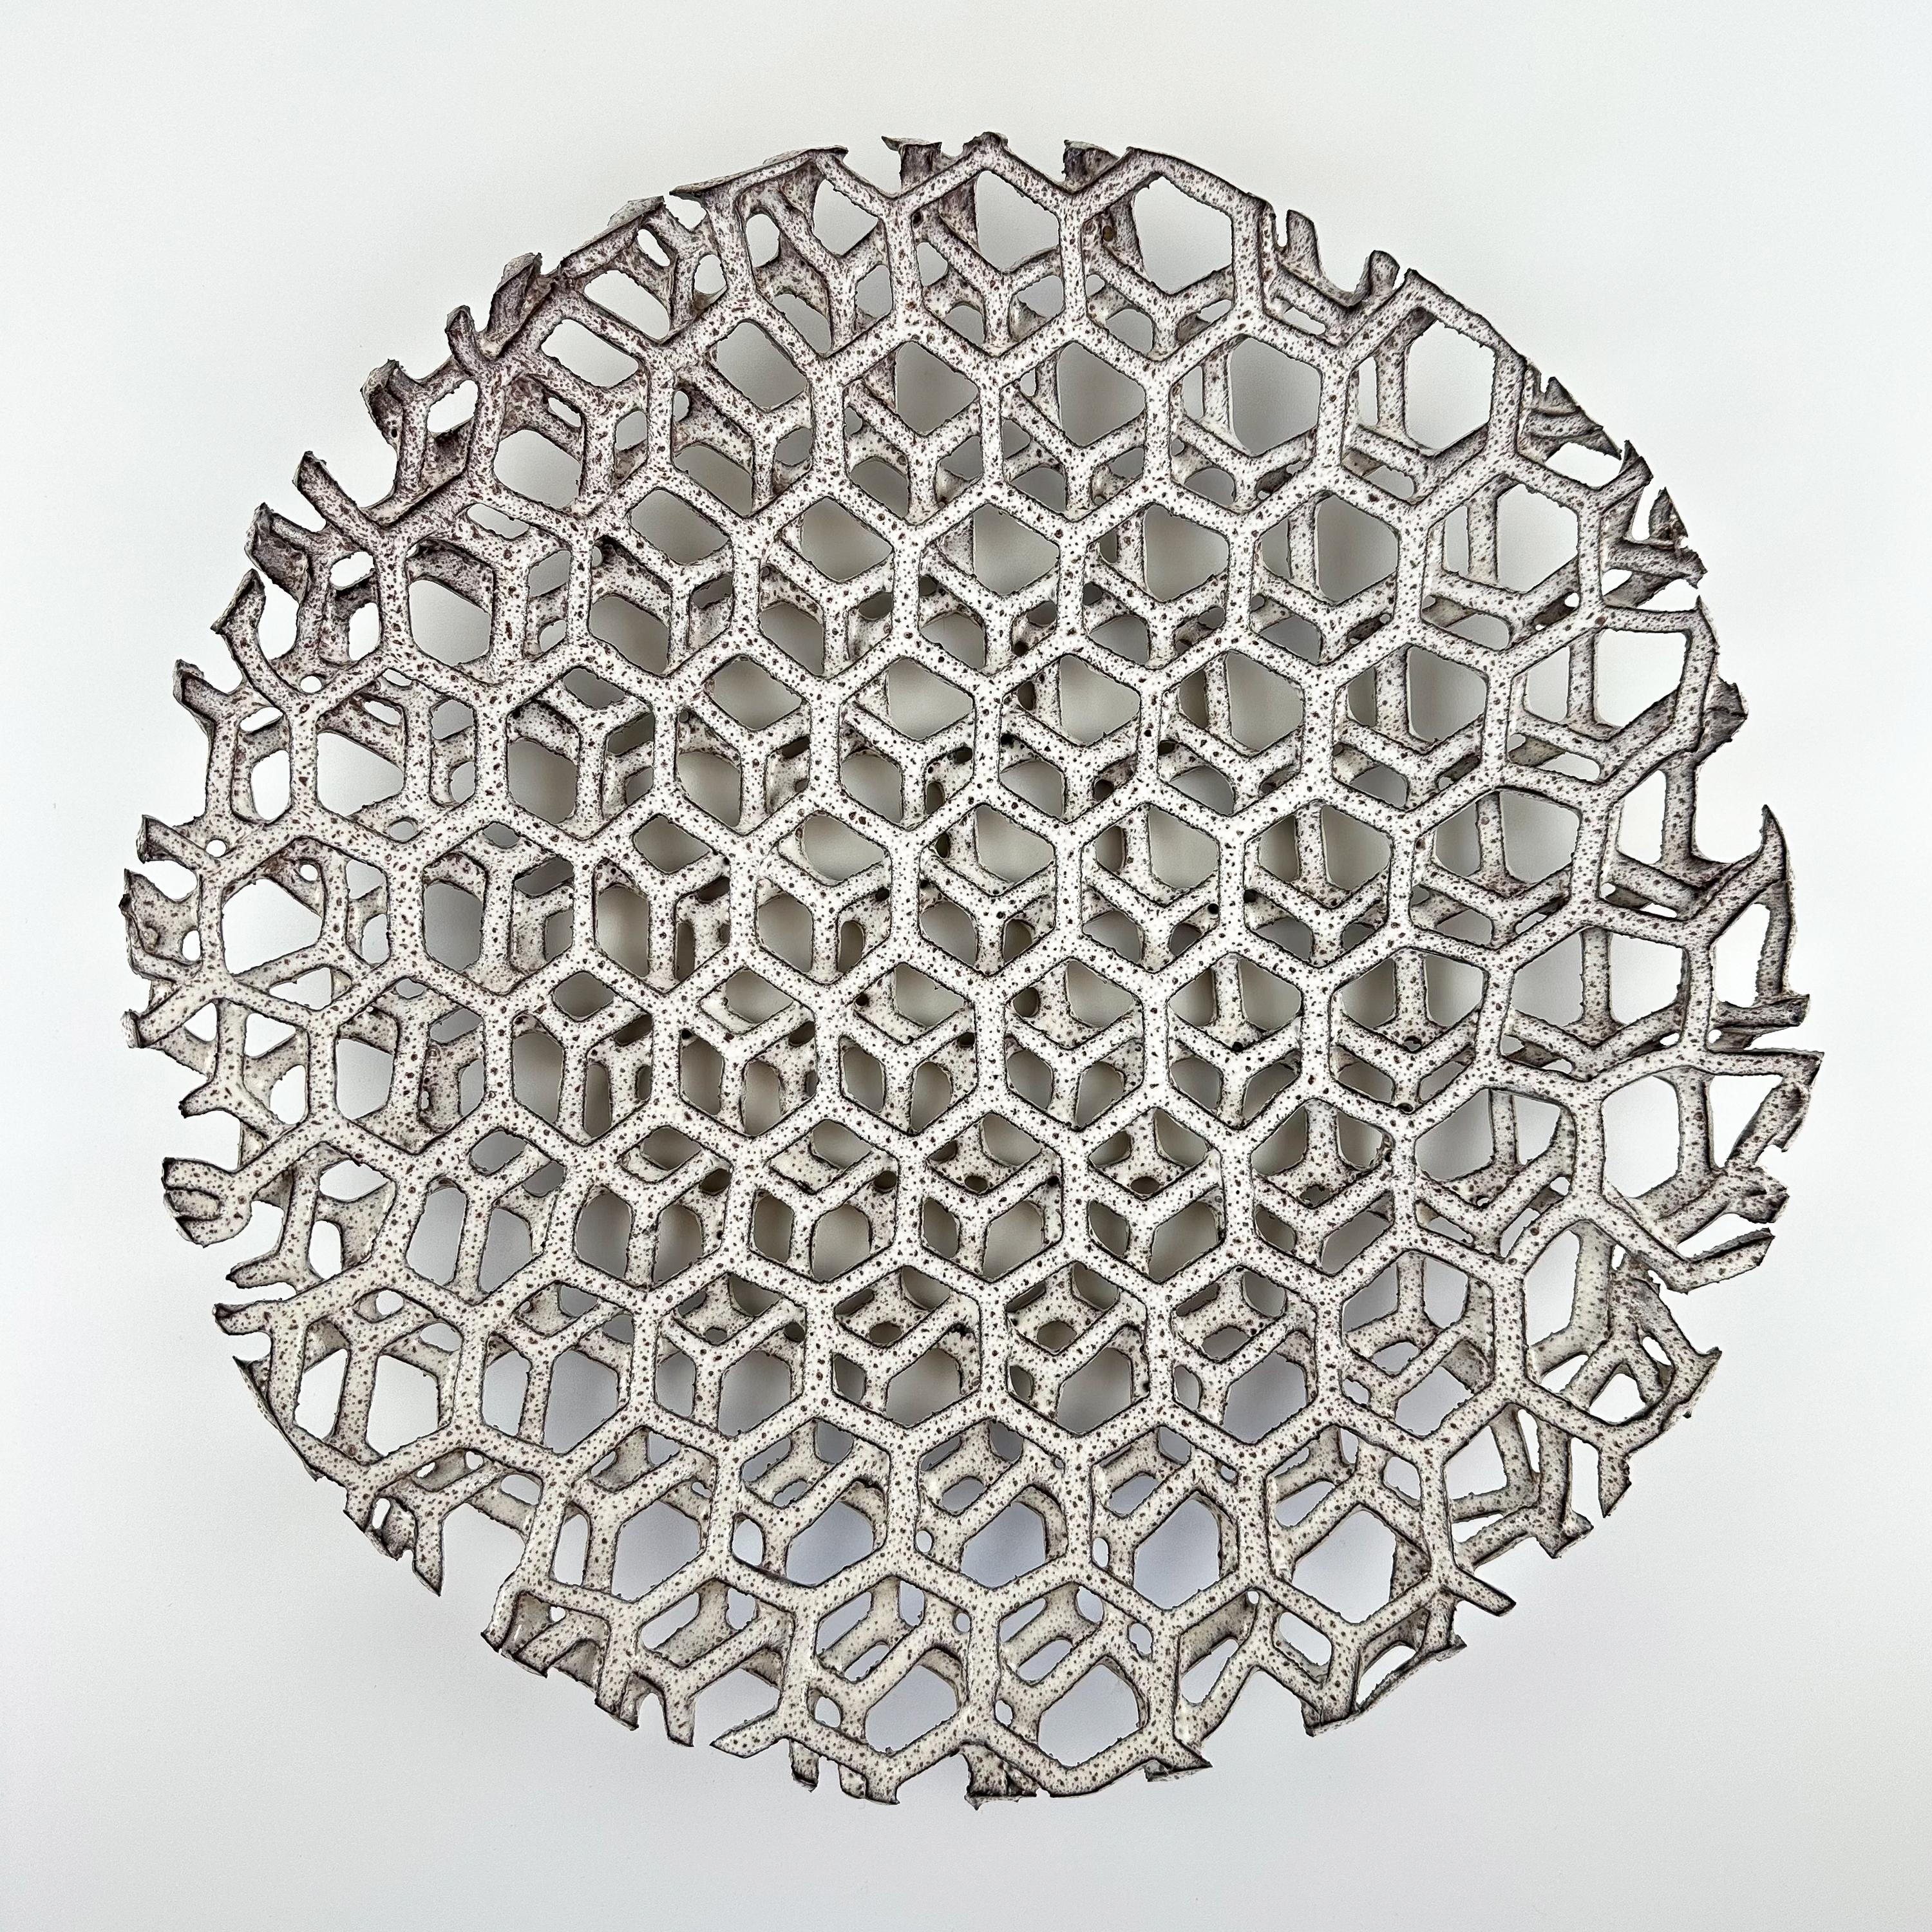 Ein sehr seltener und ungewöhnlicher Alessio Tasca (geb. 1929) geometrisch geschichteter Keramikaufsatz, Italien um 1970.  Diese moderne, niedrige Obstschale besteht aus 3 Schichten eines Keramikgitters mit einem sechseckigen Design.  Diese zarten